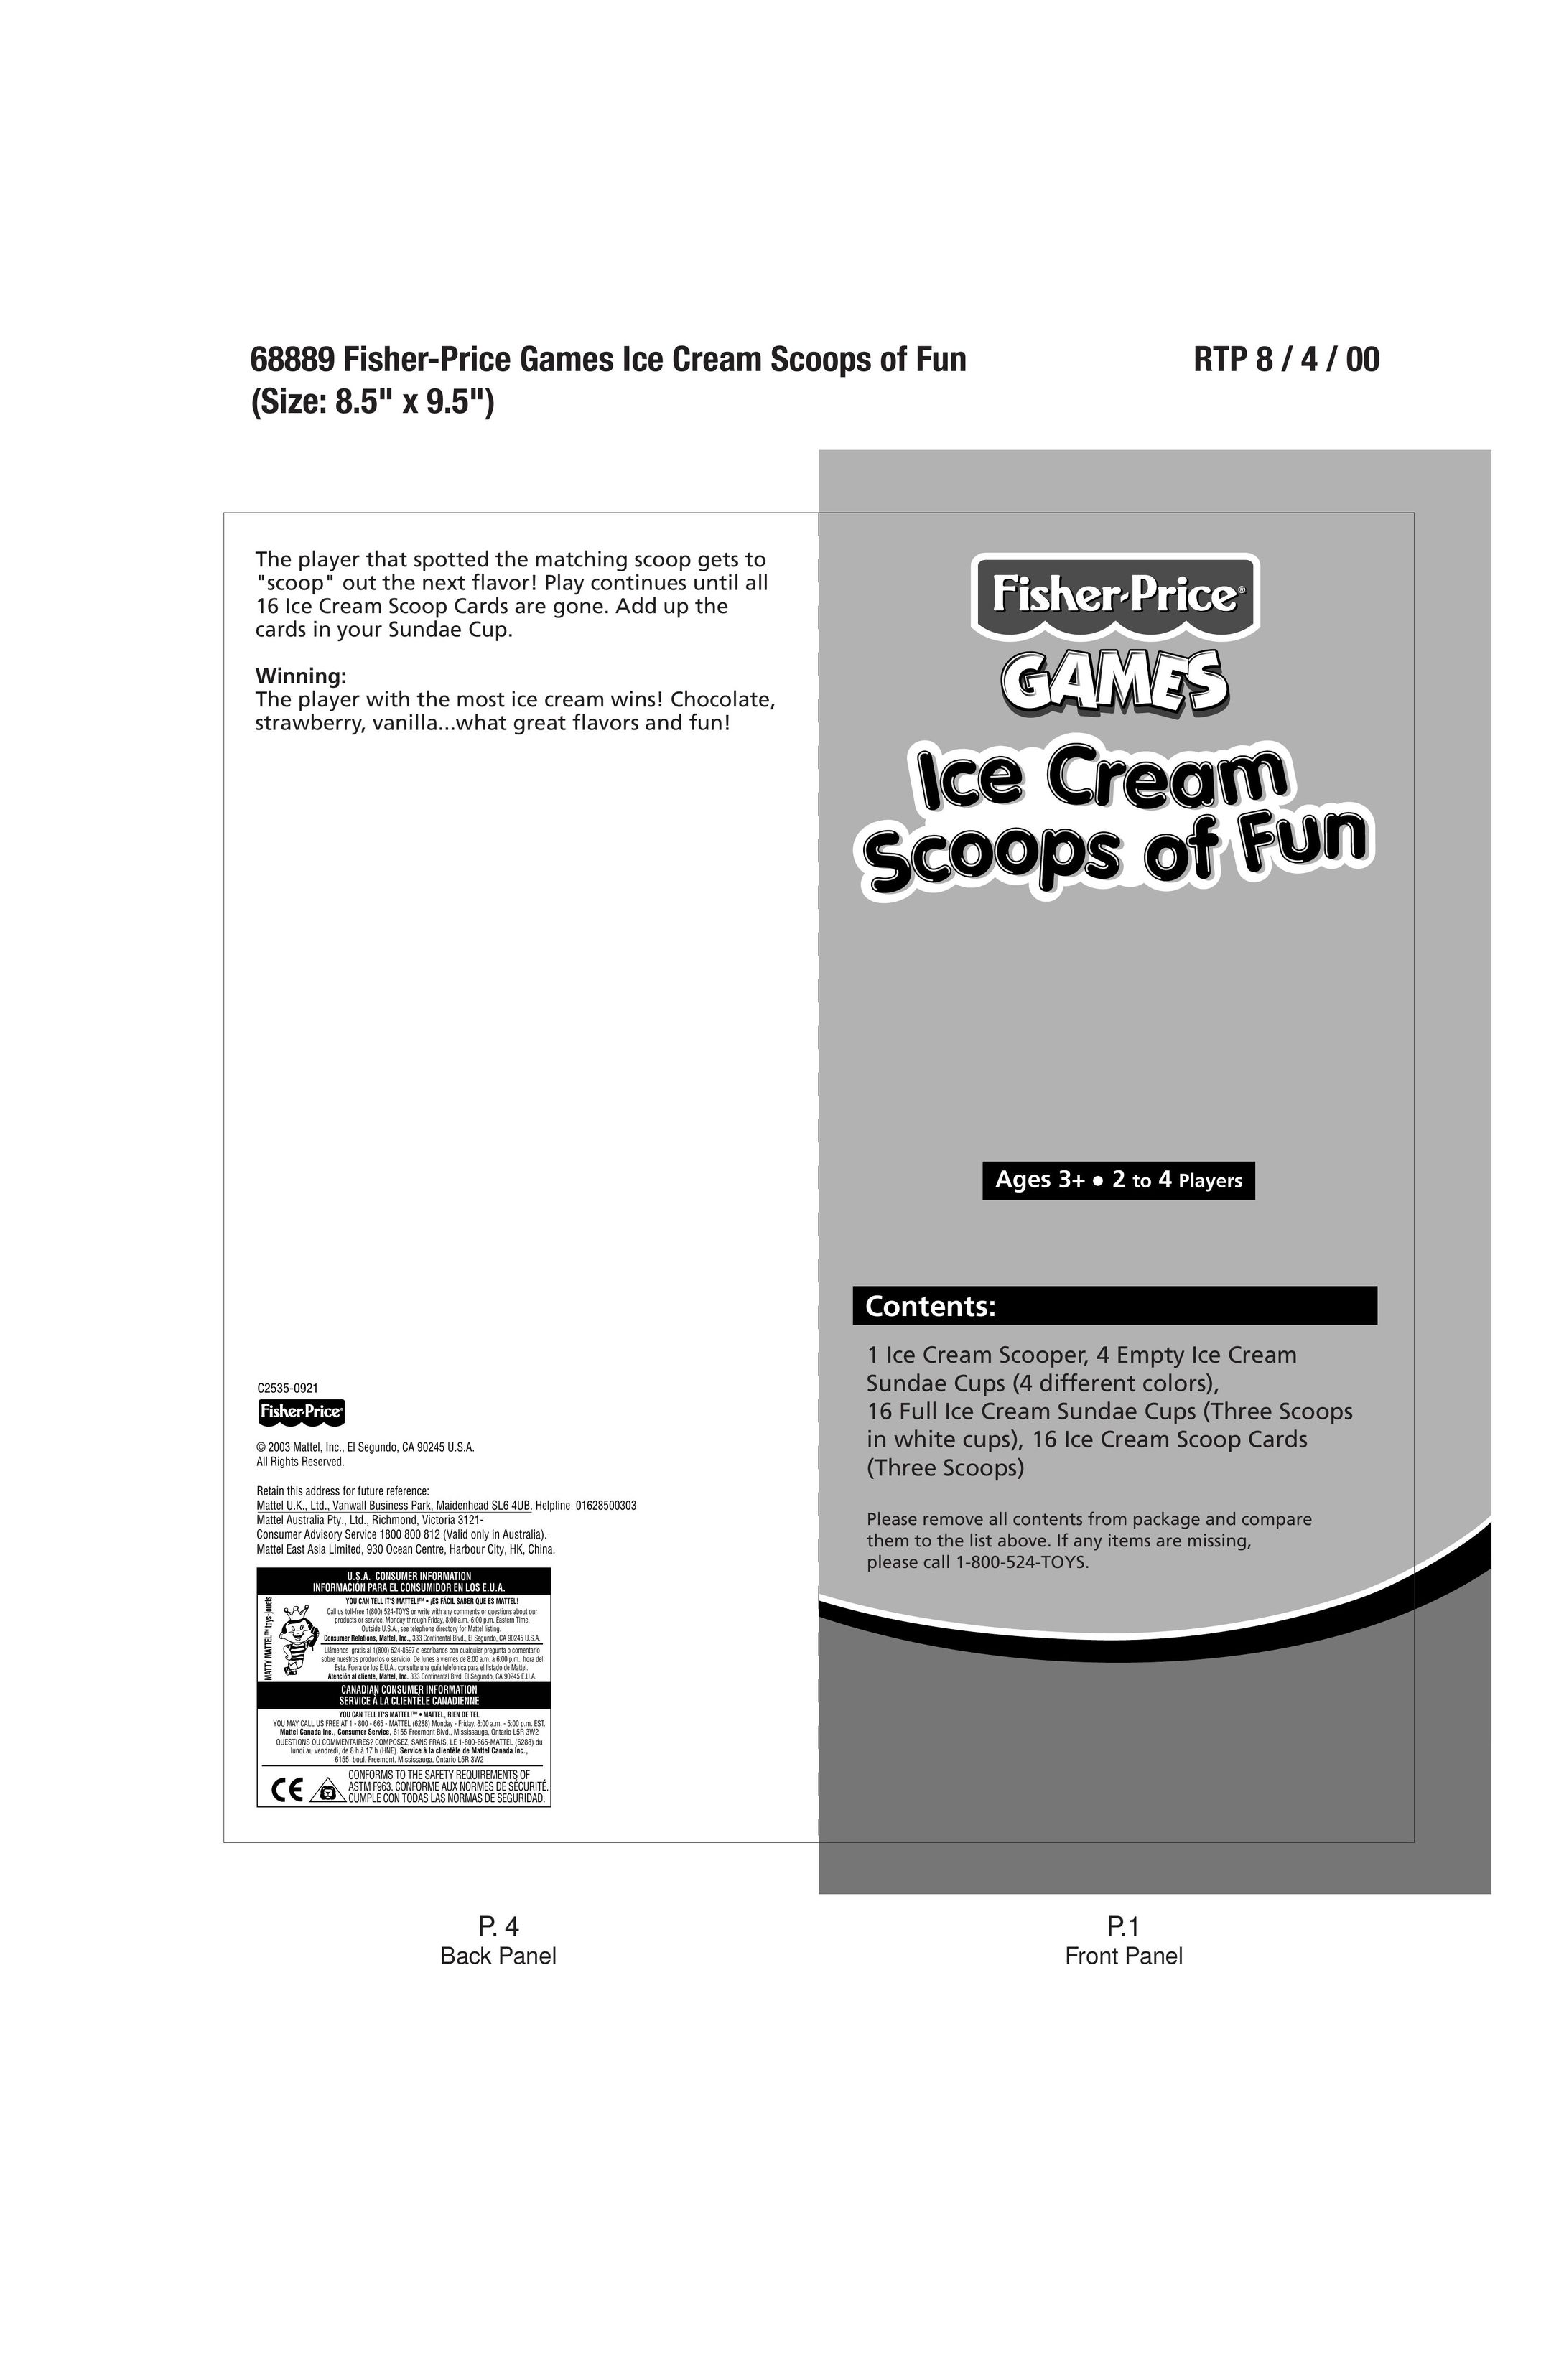 Fisher-Price 68889 Frozen Dessert Maker User Manual